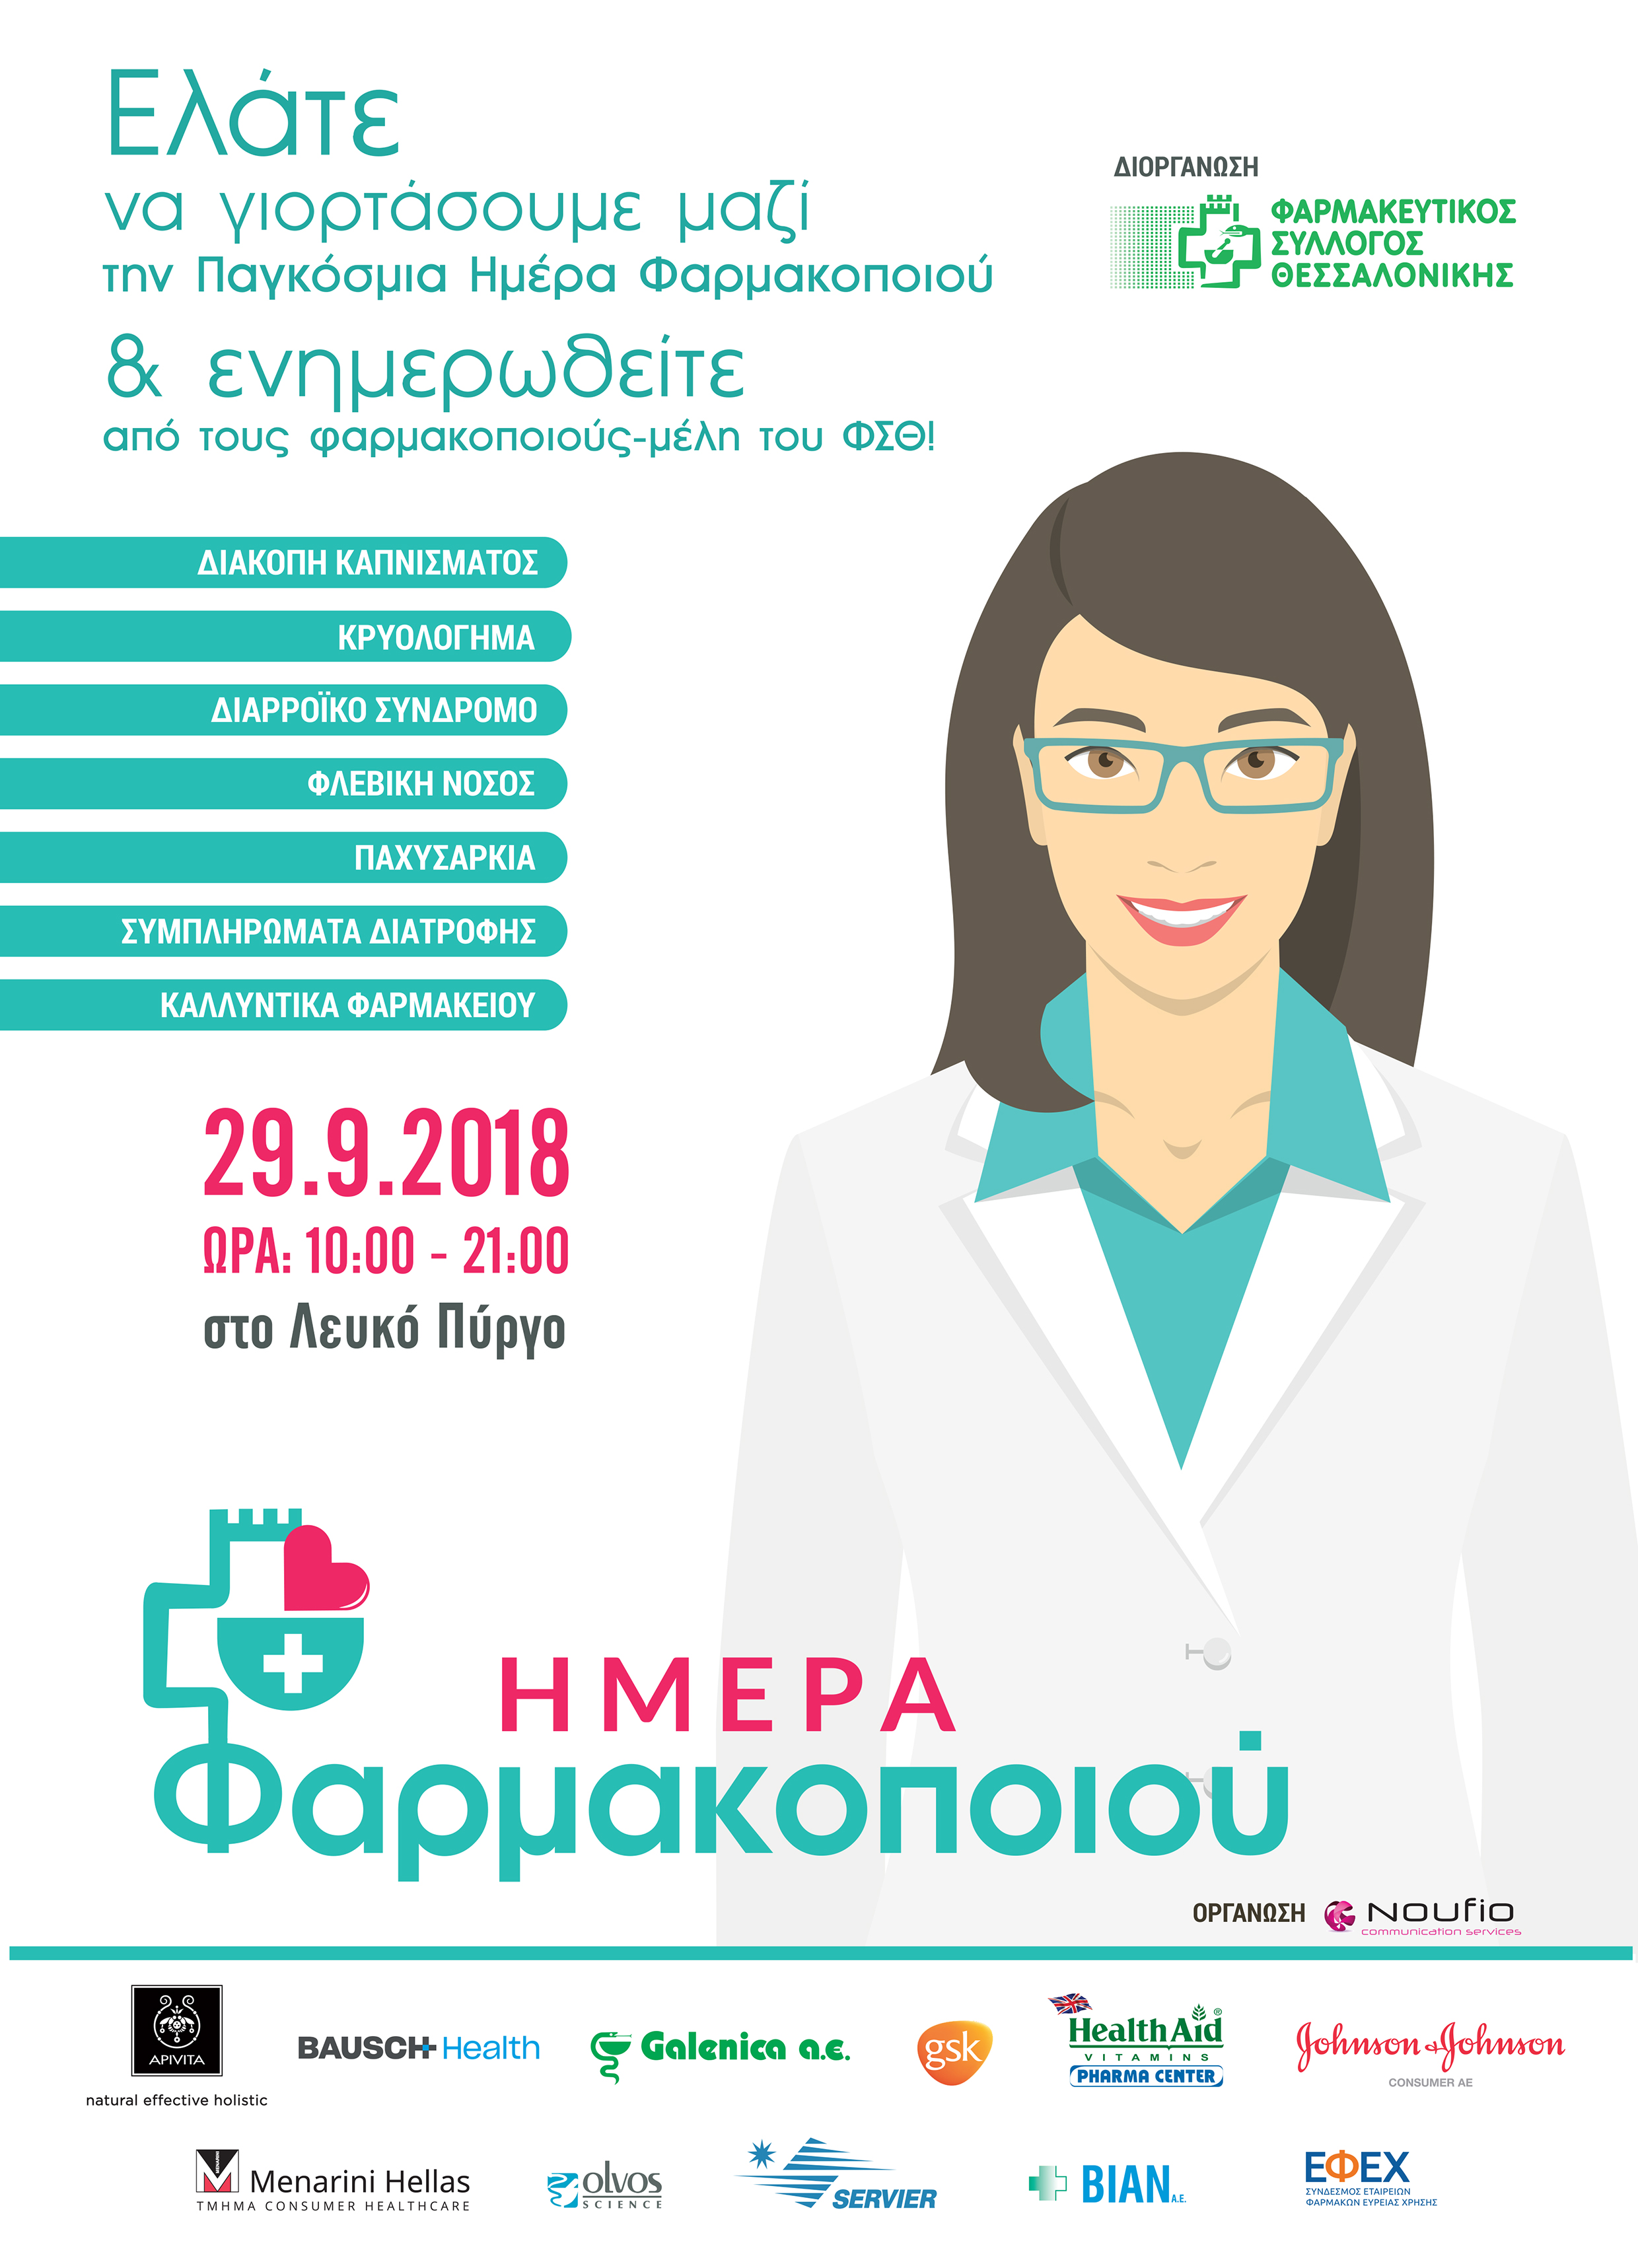 Εκδήλωση «Ημέρα του Φαρμακοποιού» διοργανώνει αύριο ο Φαρμακευτικός Σύλλογος Θεσσαλονίκης